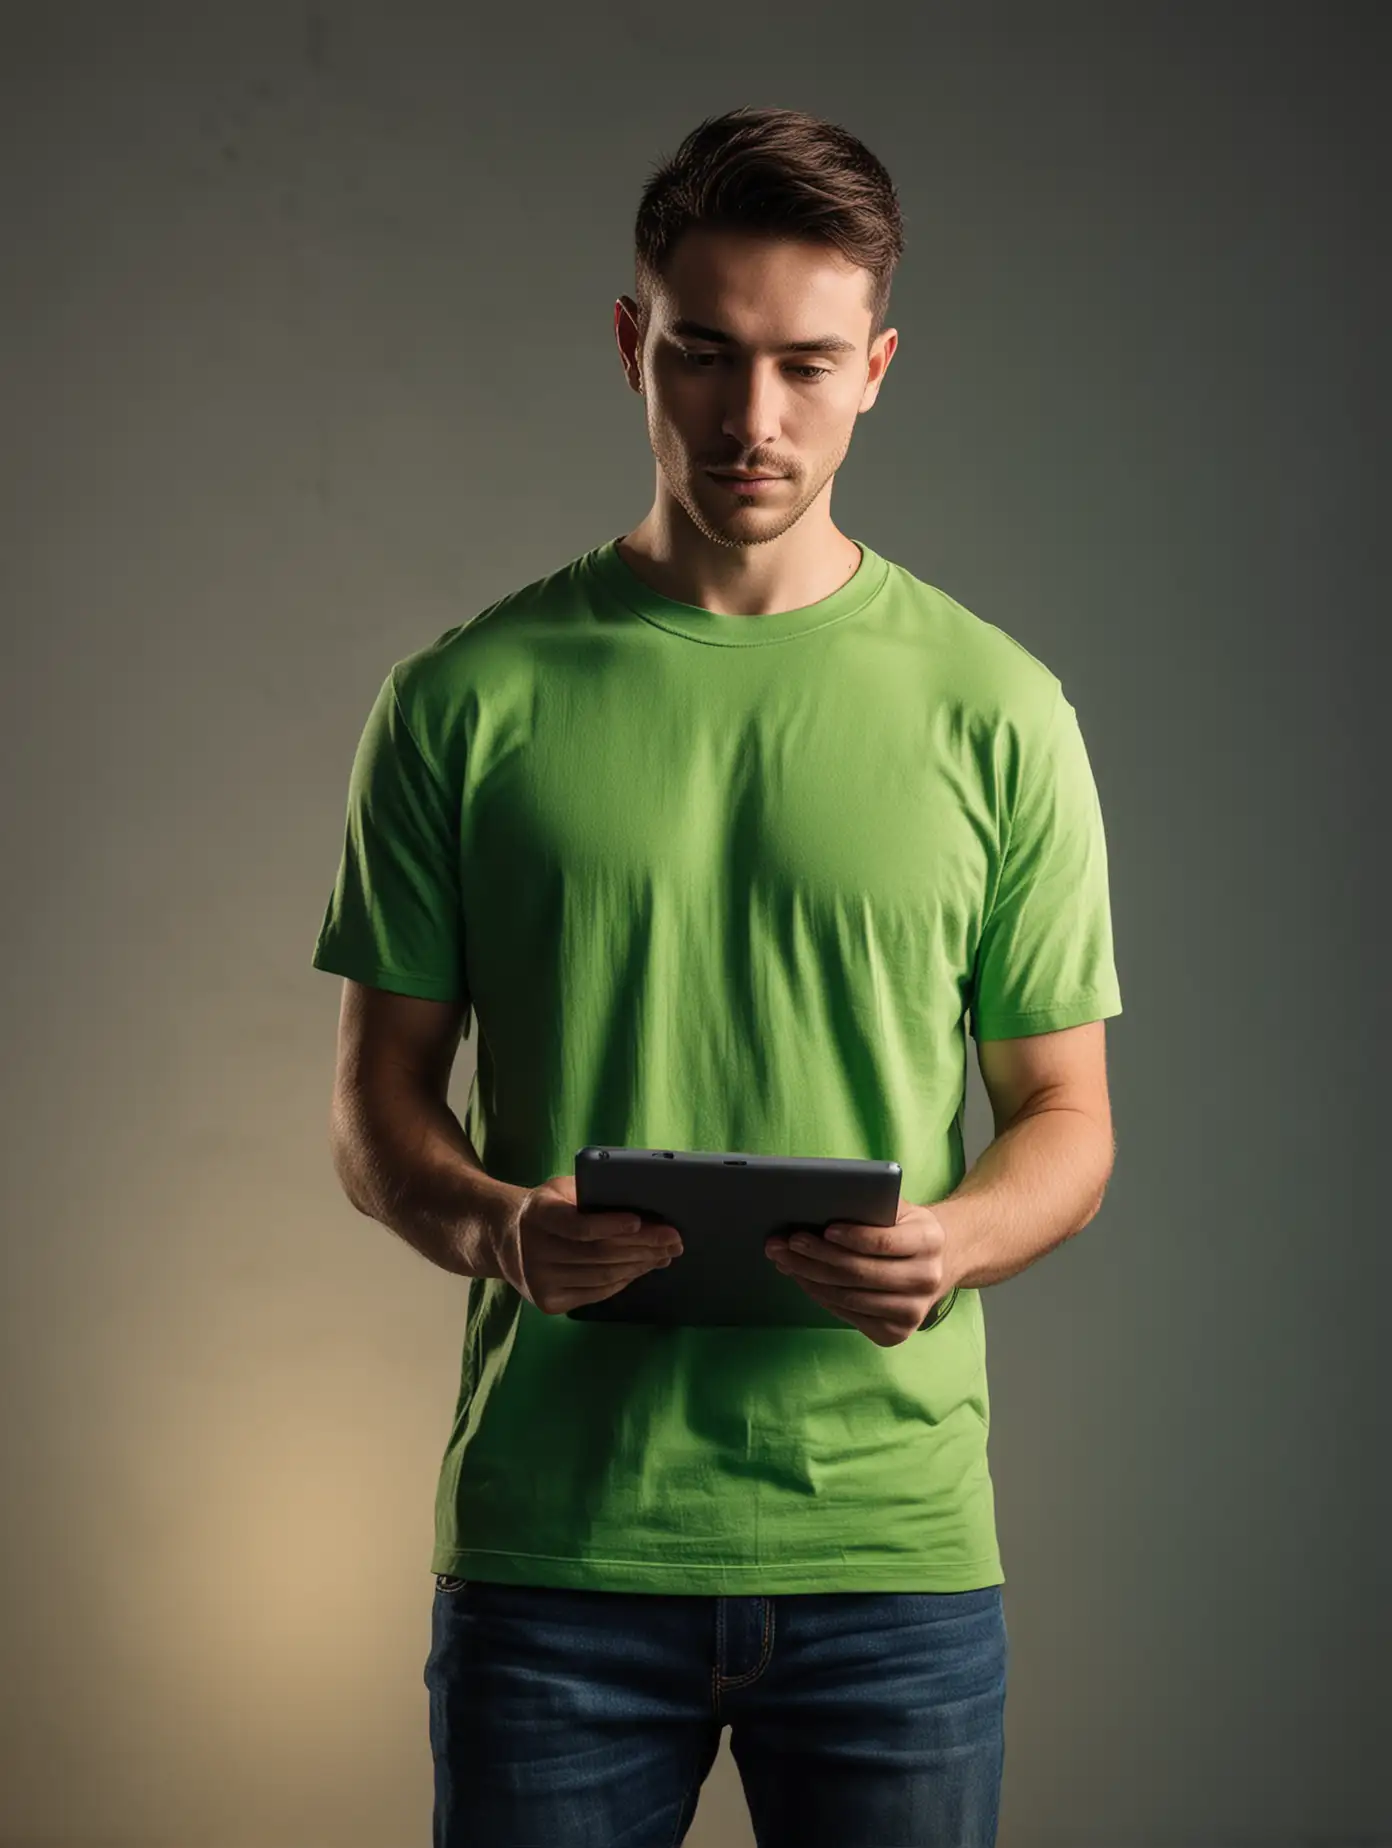 Latino Man in Green TShirt Using Tablet in Illuminated Studio